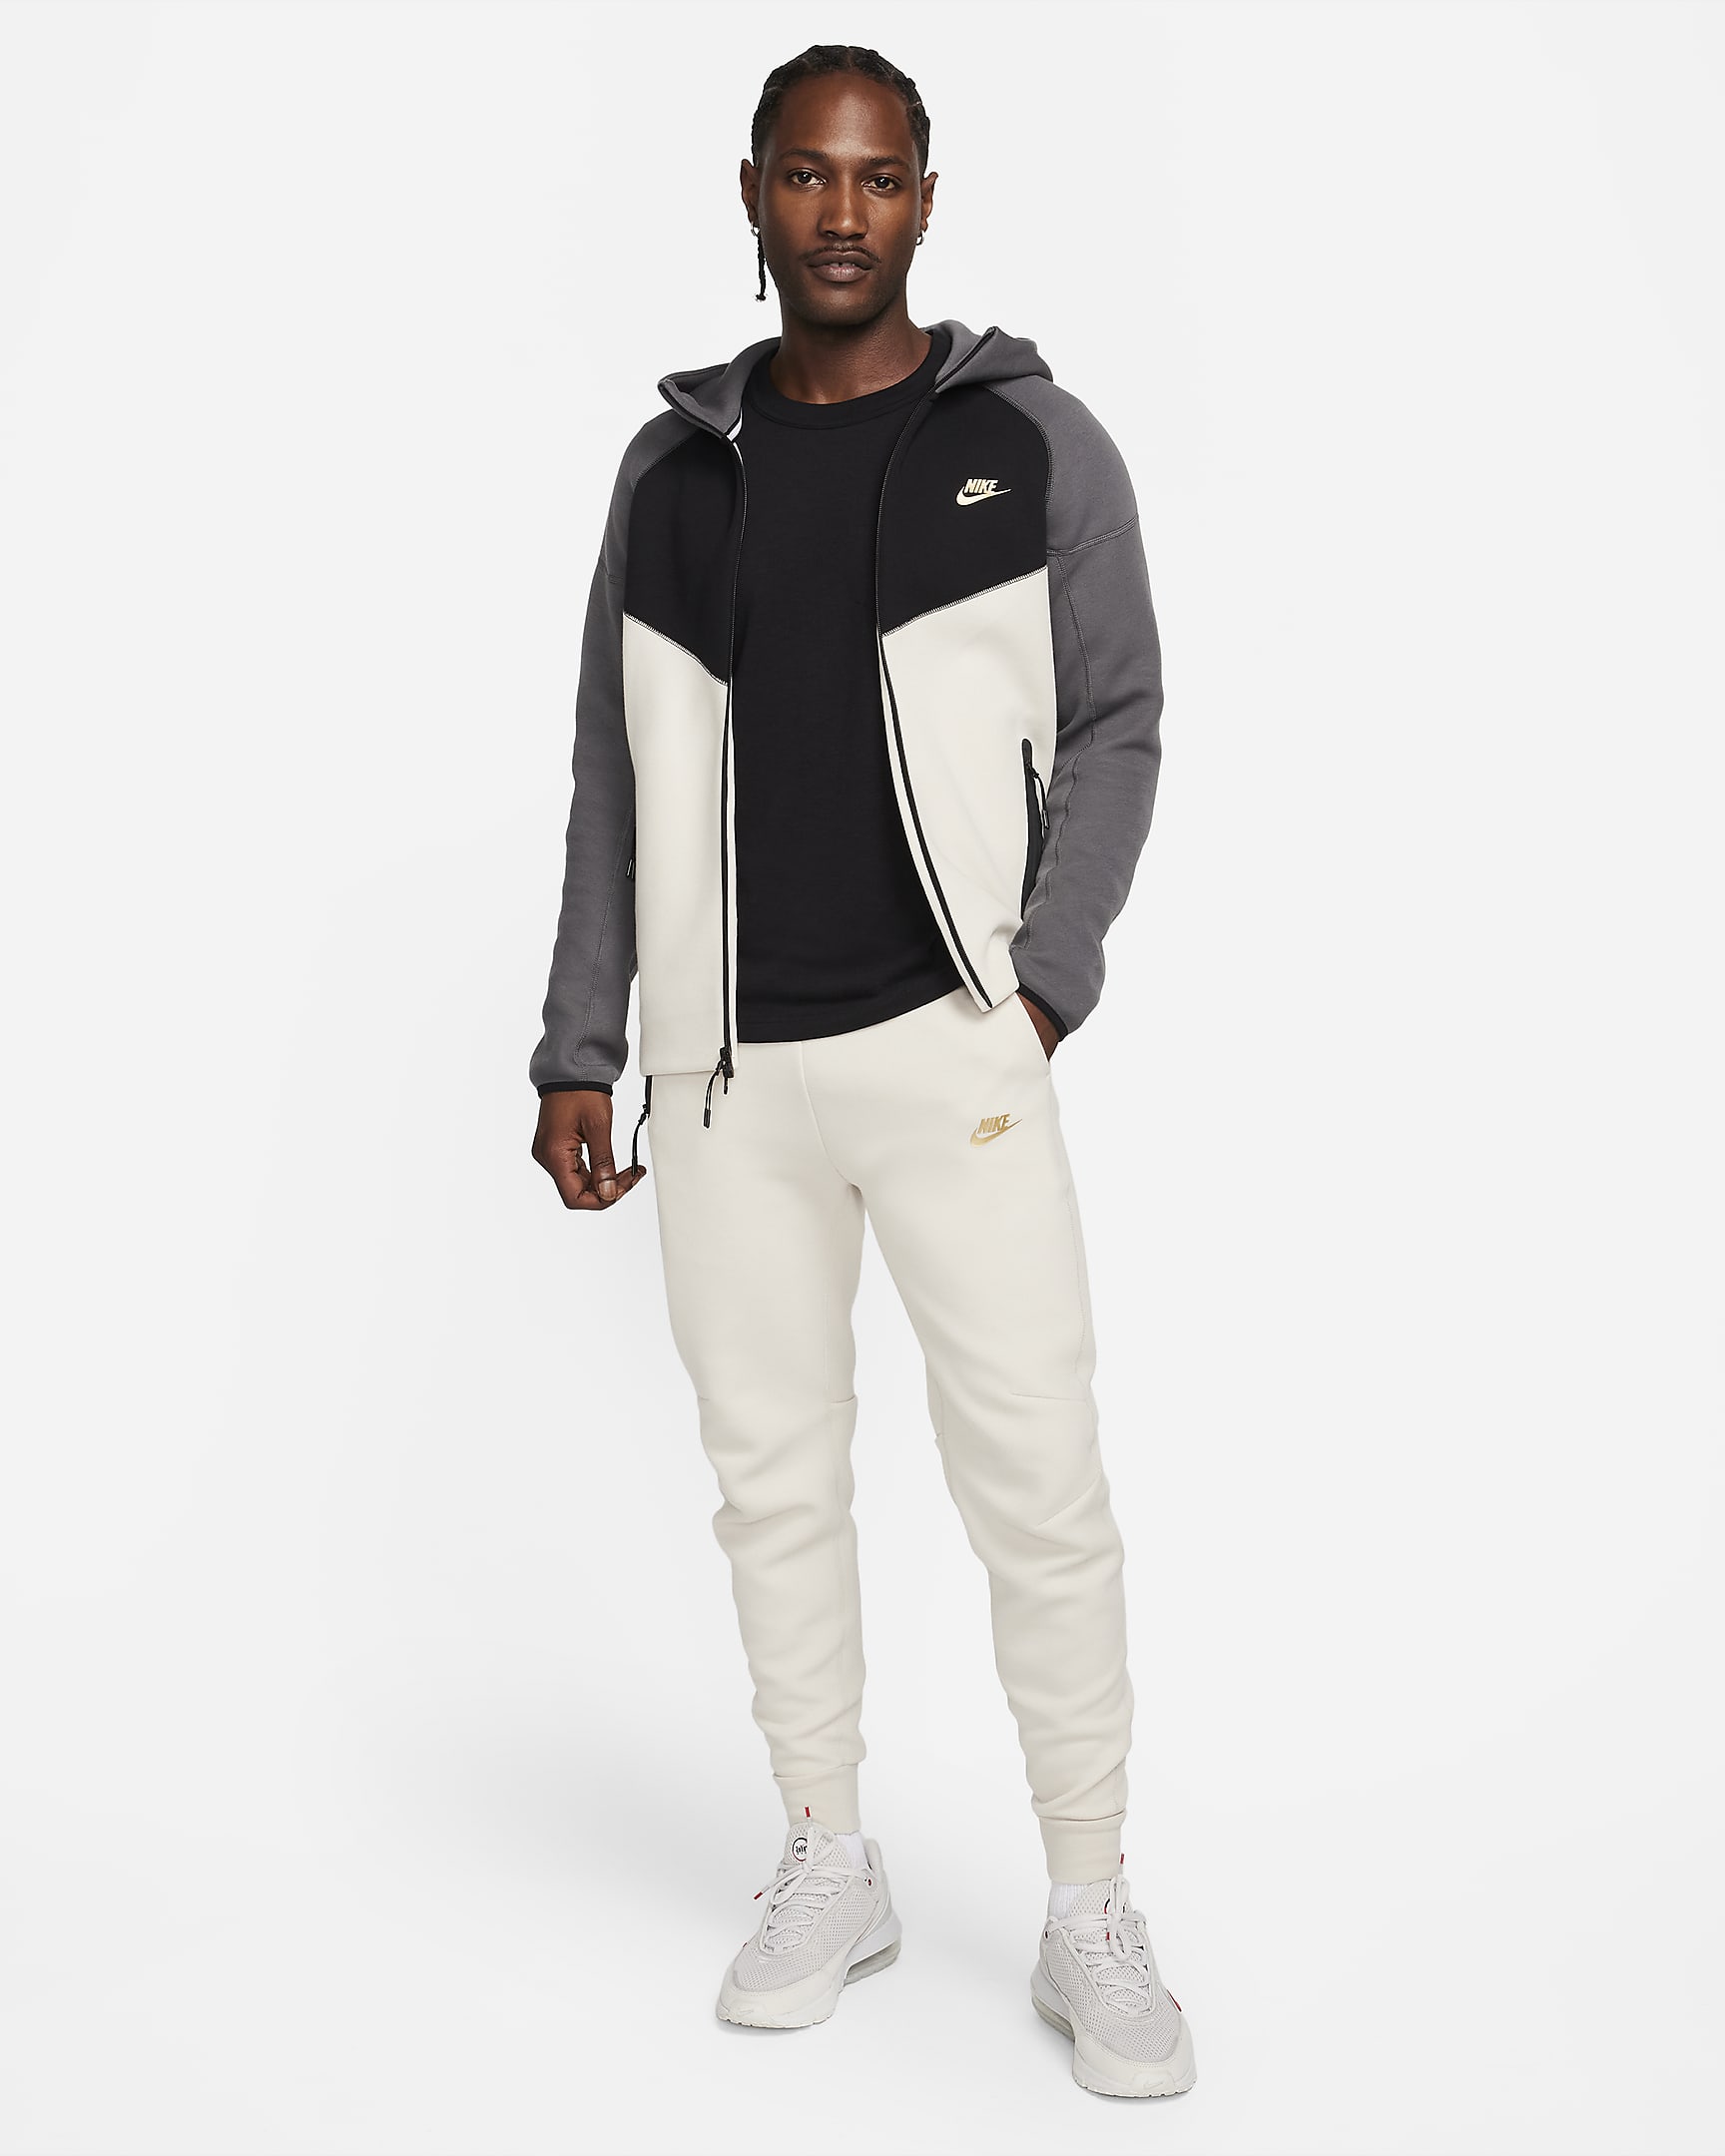 Nike Sportswear Tech Fleece Men's Joggers - Light Orewood Brown/Metallic Gold